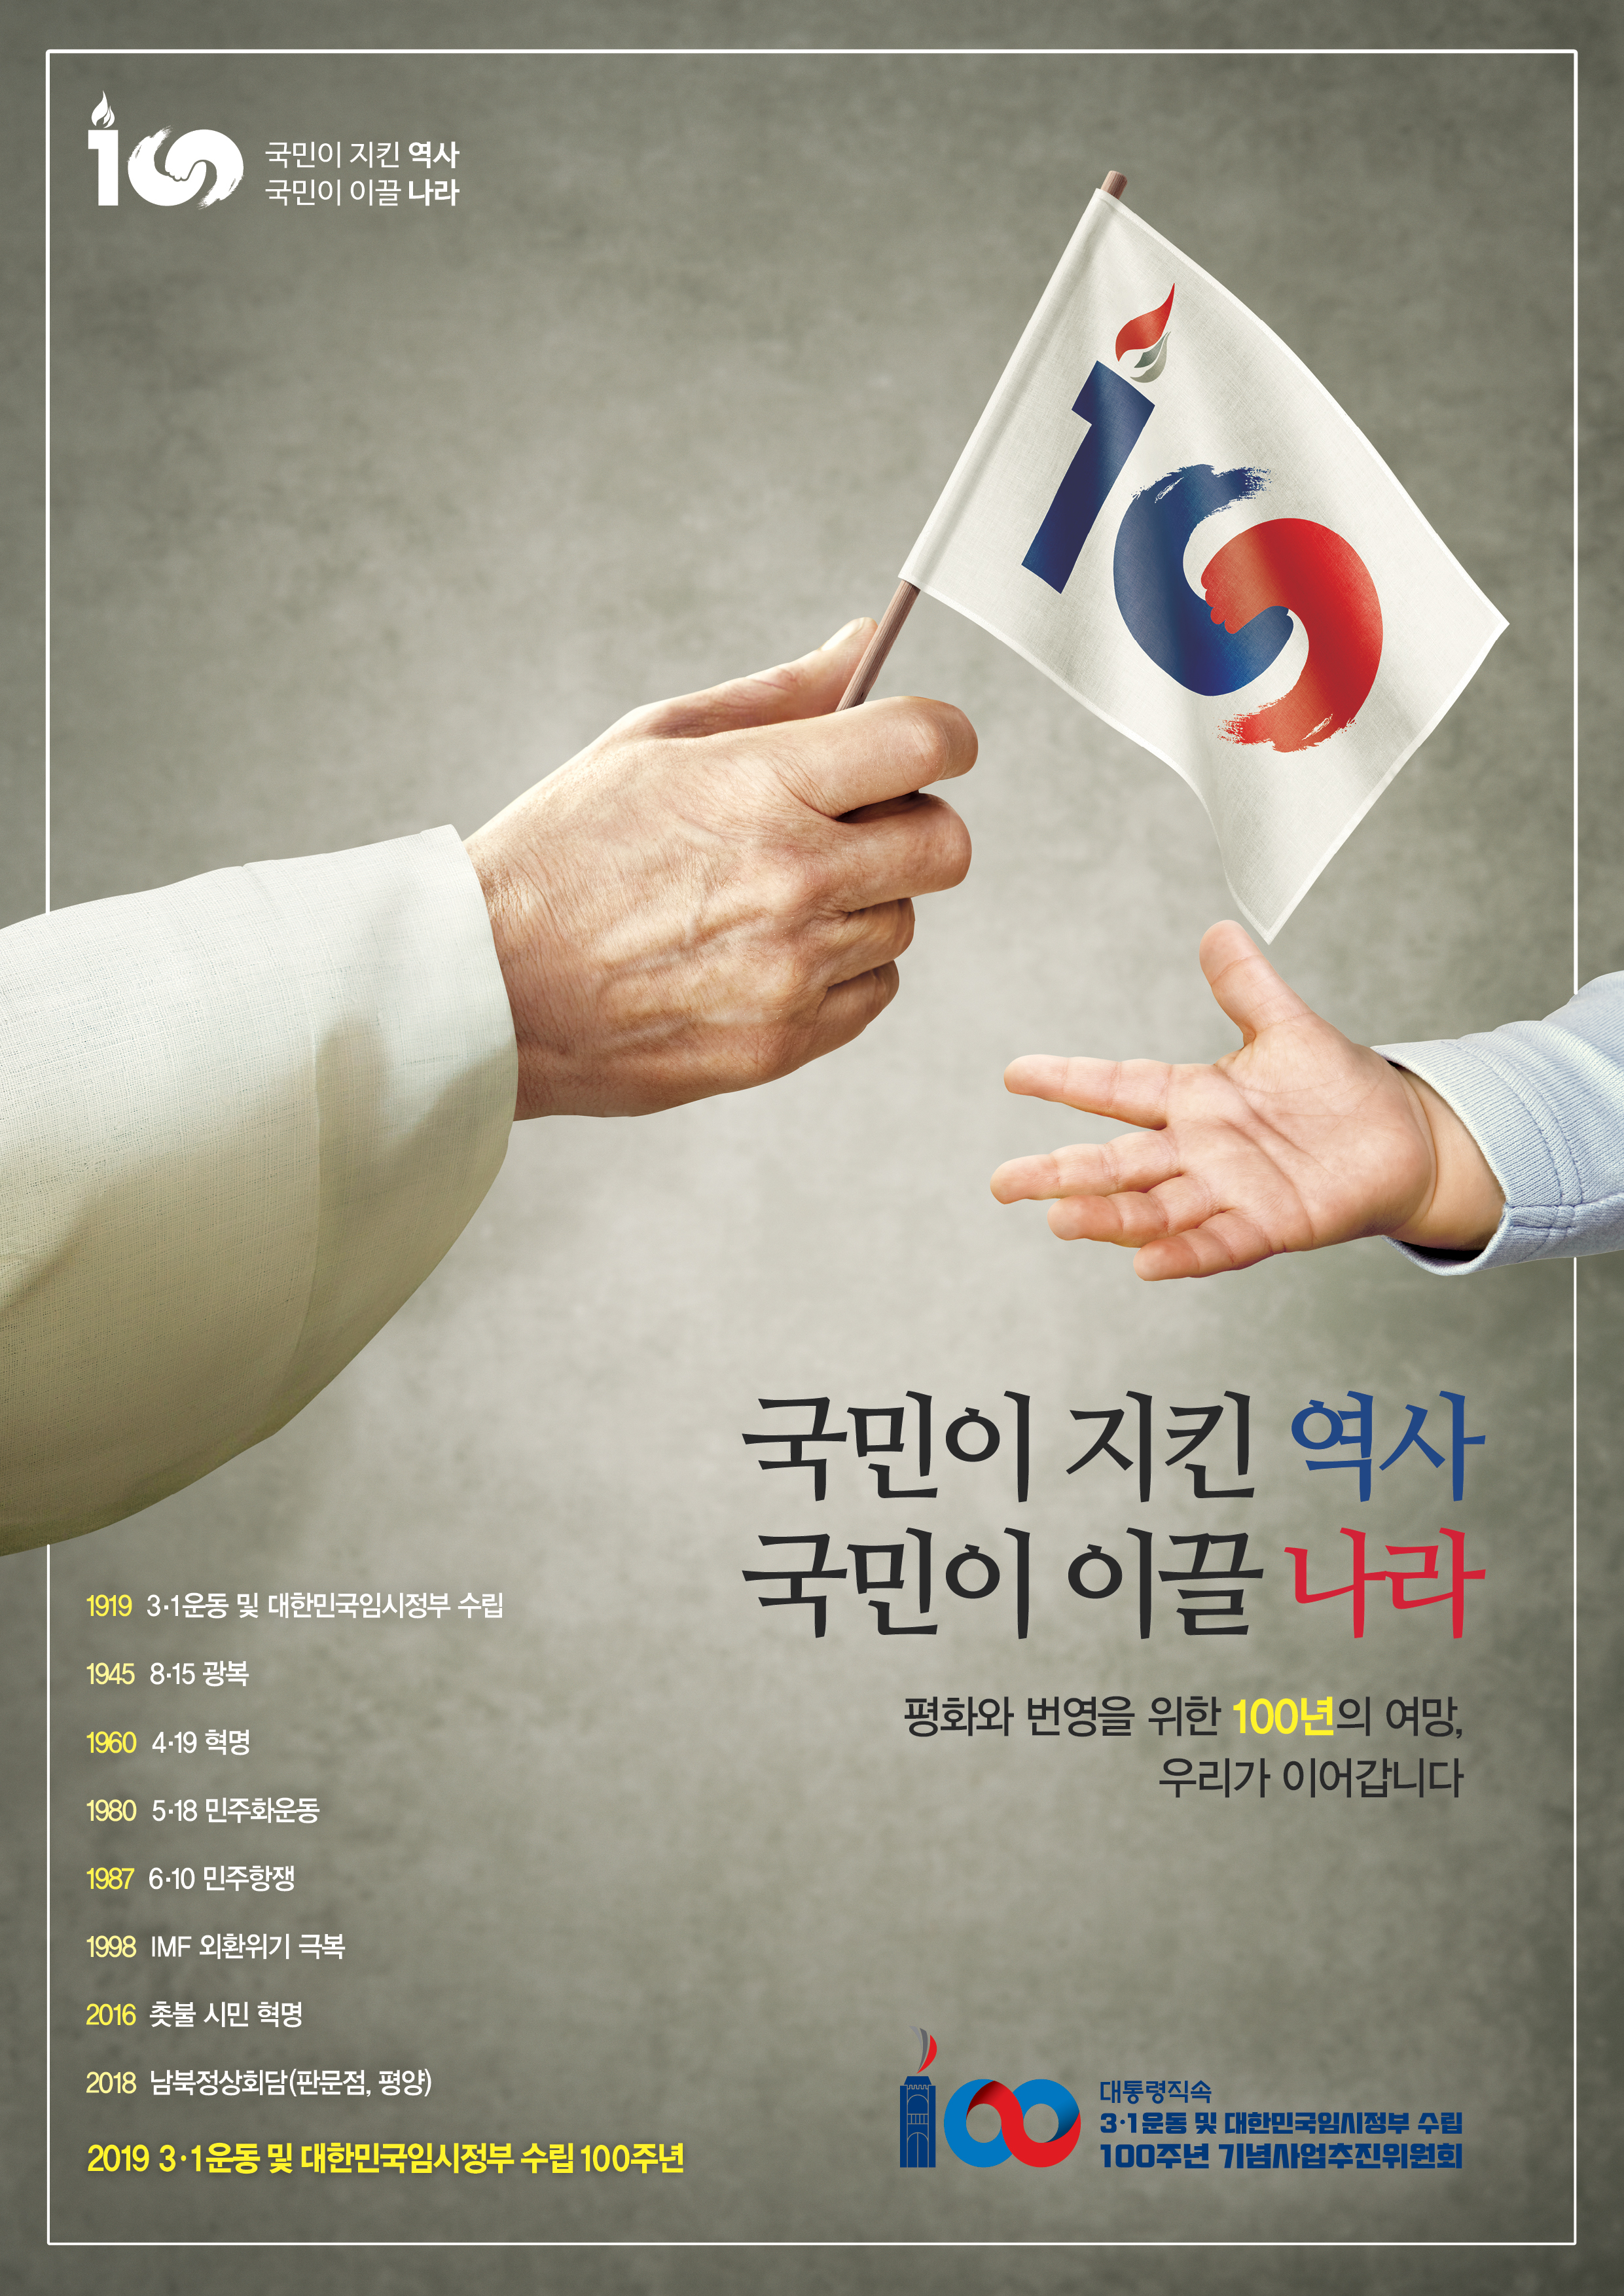 3.1운동 및 임정수립 100주년 기념 홍보0